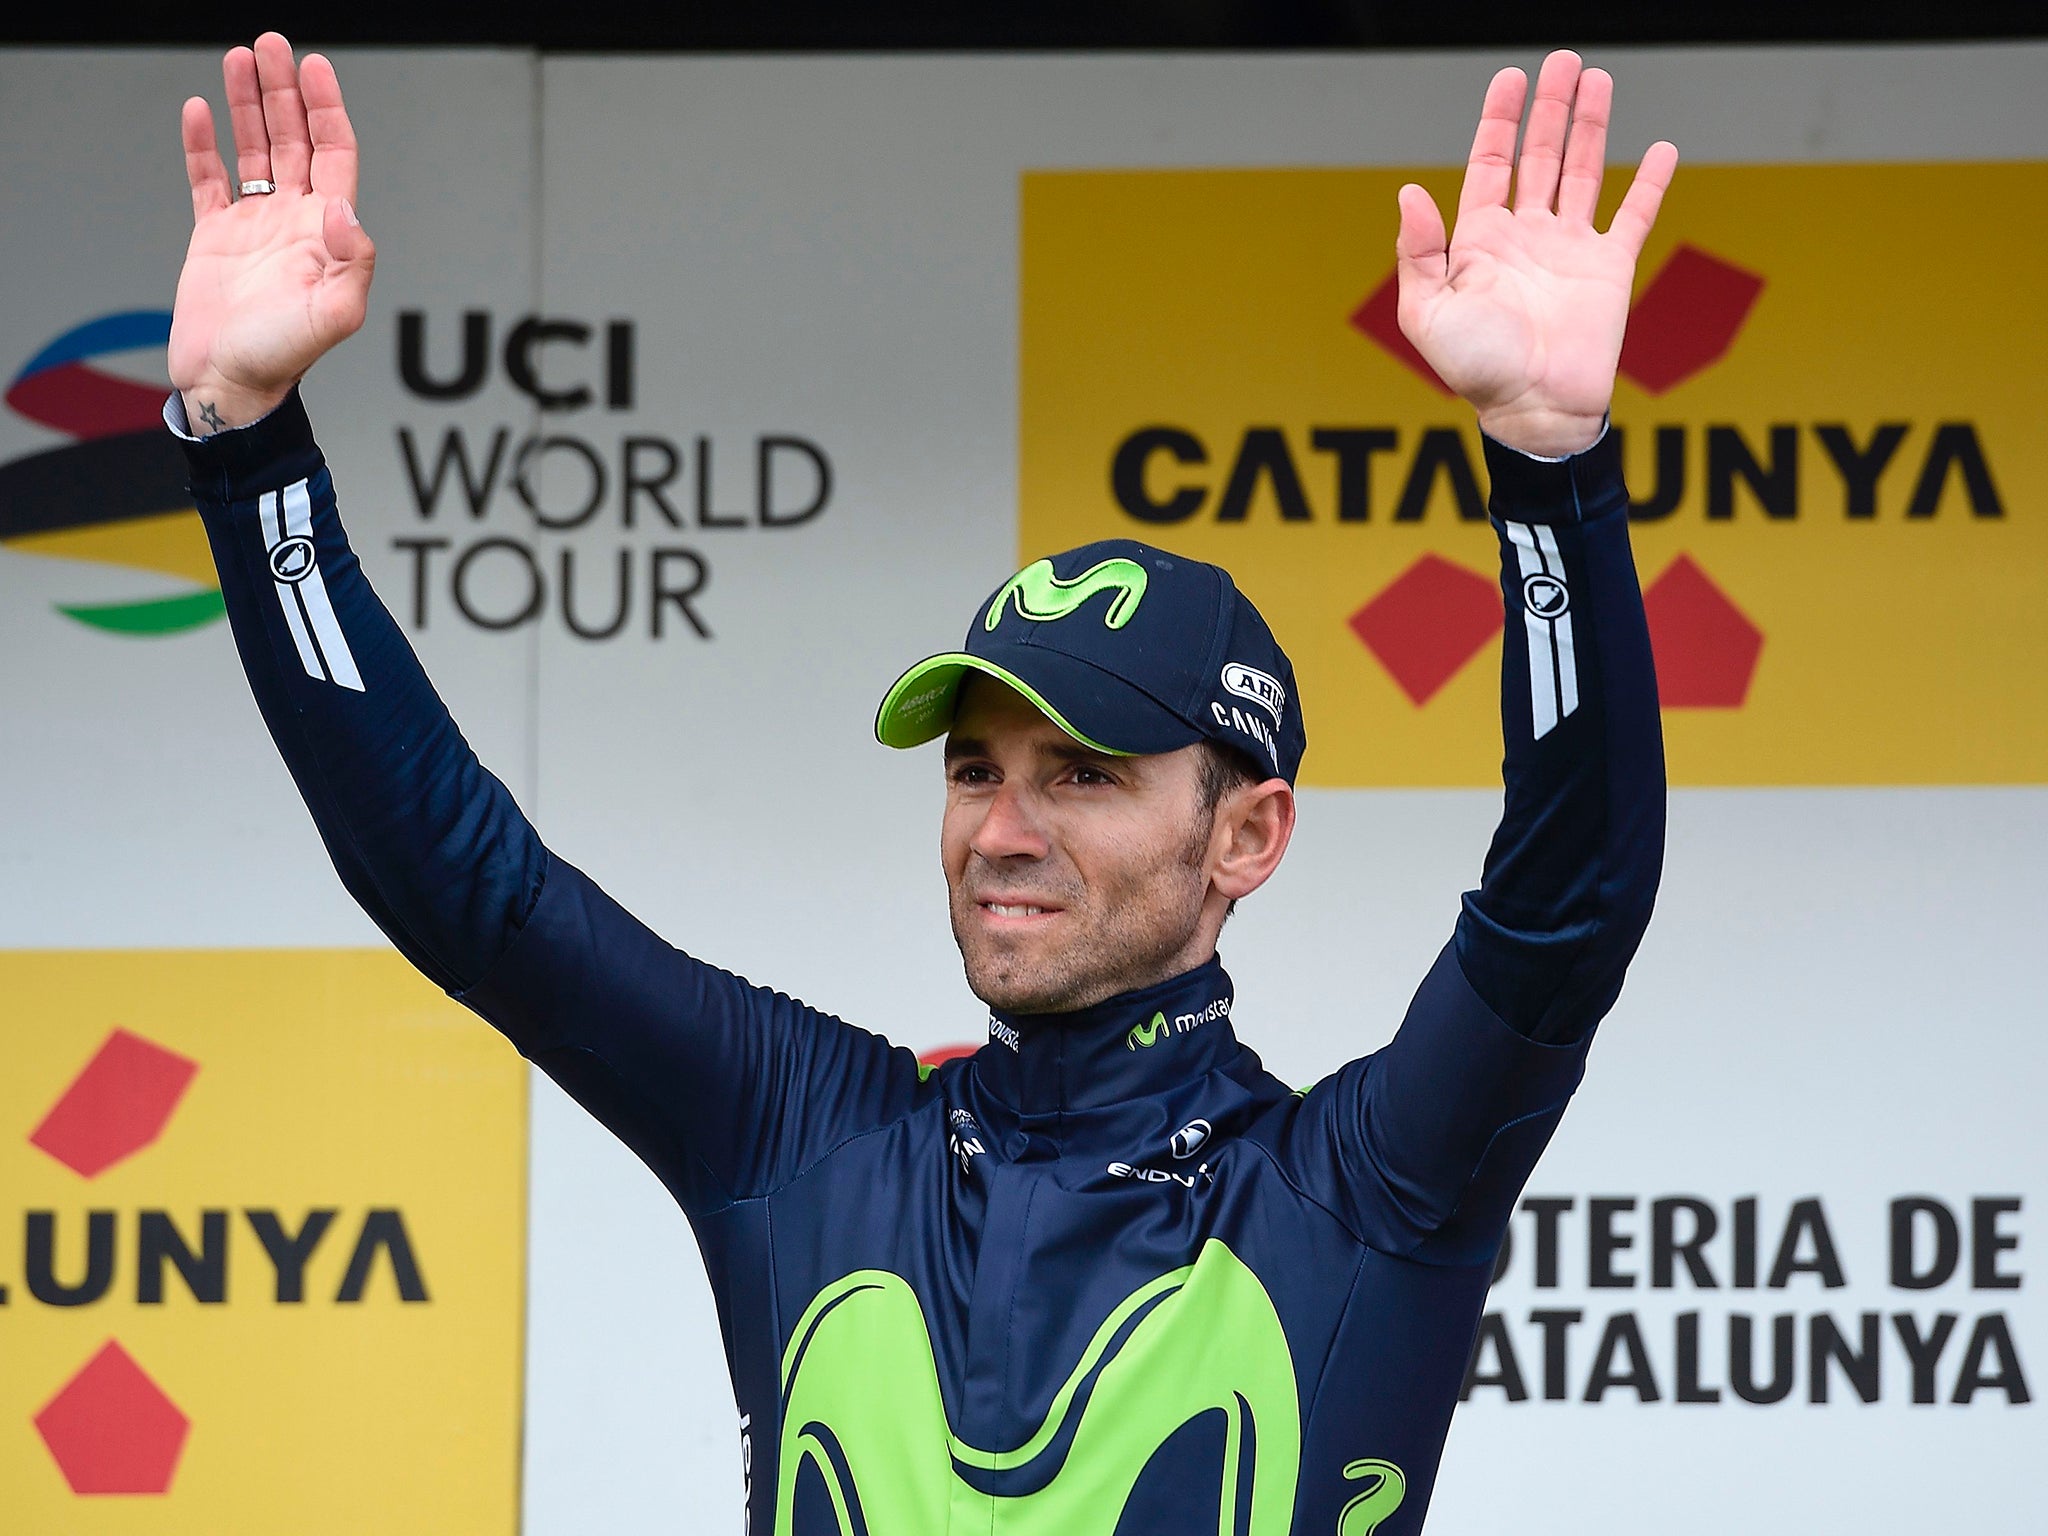 Valverde celebrates his victory on stage three